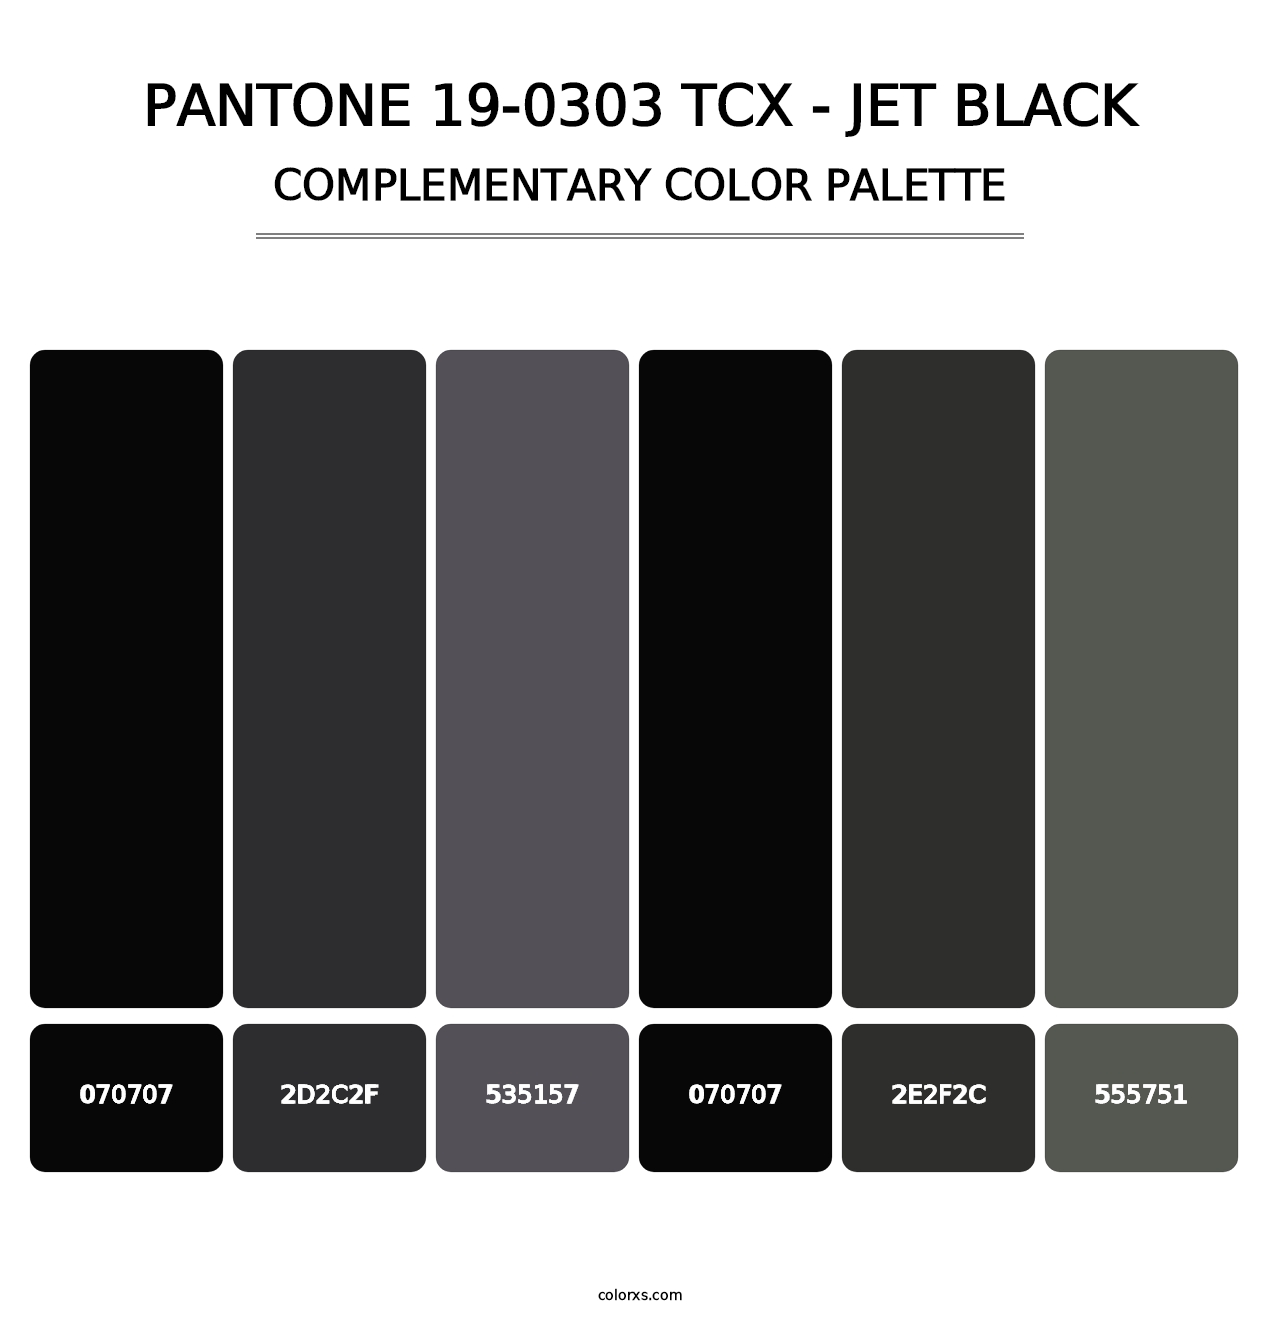 PANTONE 19-0303 TCX - Jet Black - Complementary Color Palette